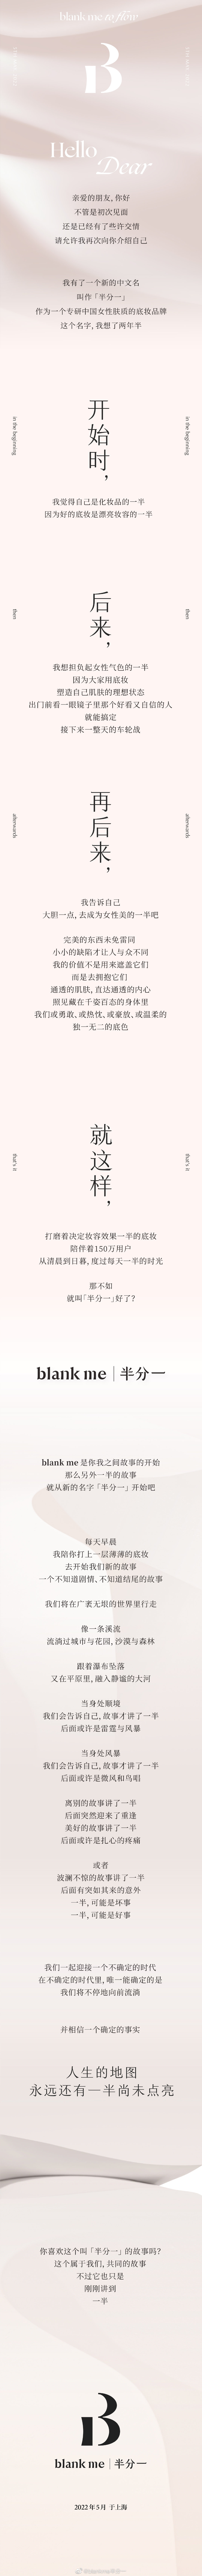 blank me 有了全新中文名「半分一」